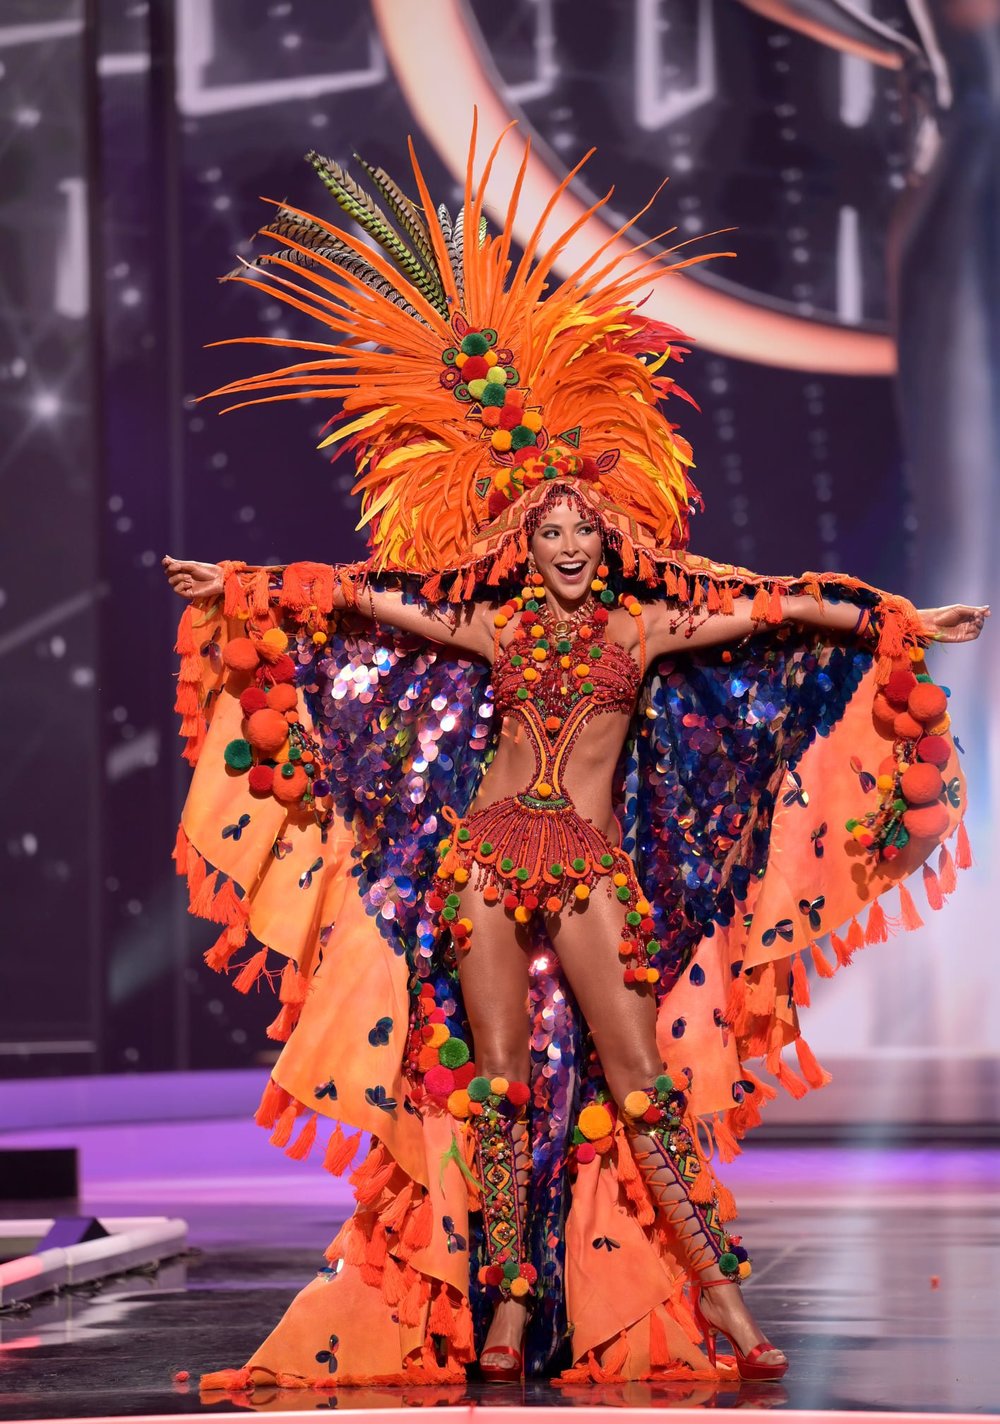  
Người đẹp của Colombia - xứ sở của các cuộc thi Hoa hậu. (Ảnh BTC) - Tin sao Viet - Tin tuc sao Viet - Scandal sao Viet - Tin tuc cua Sao - Tin cua Sao